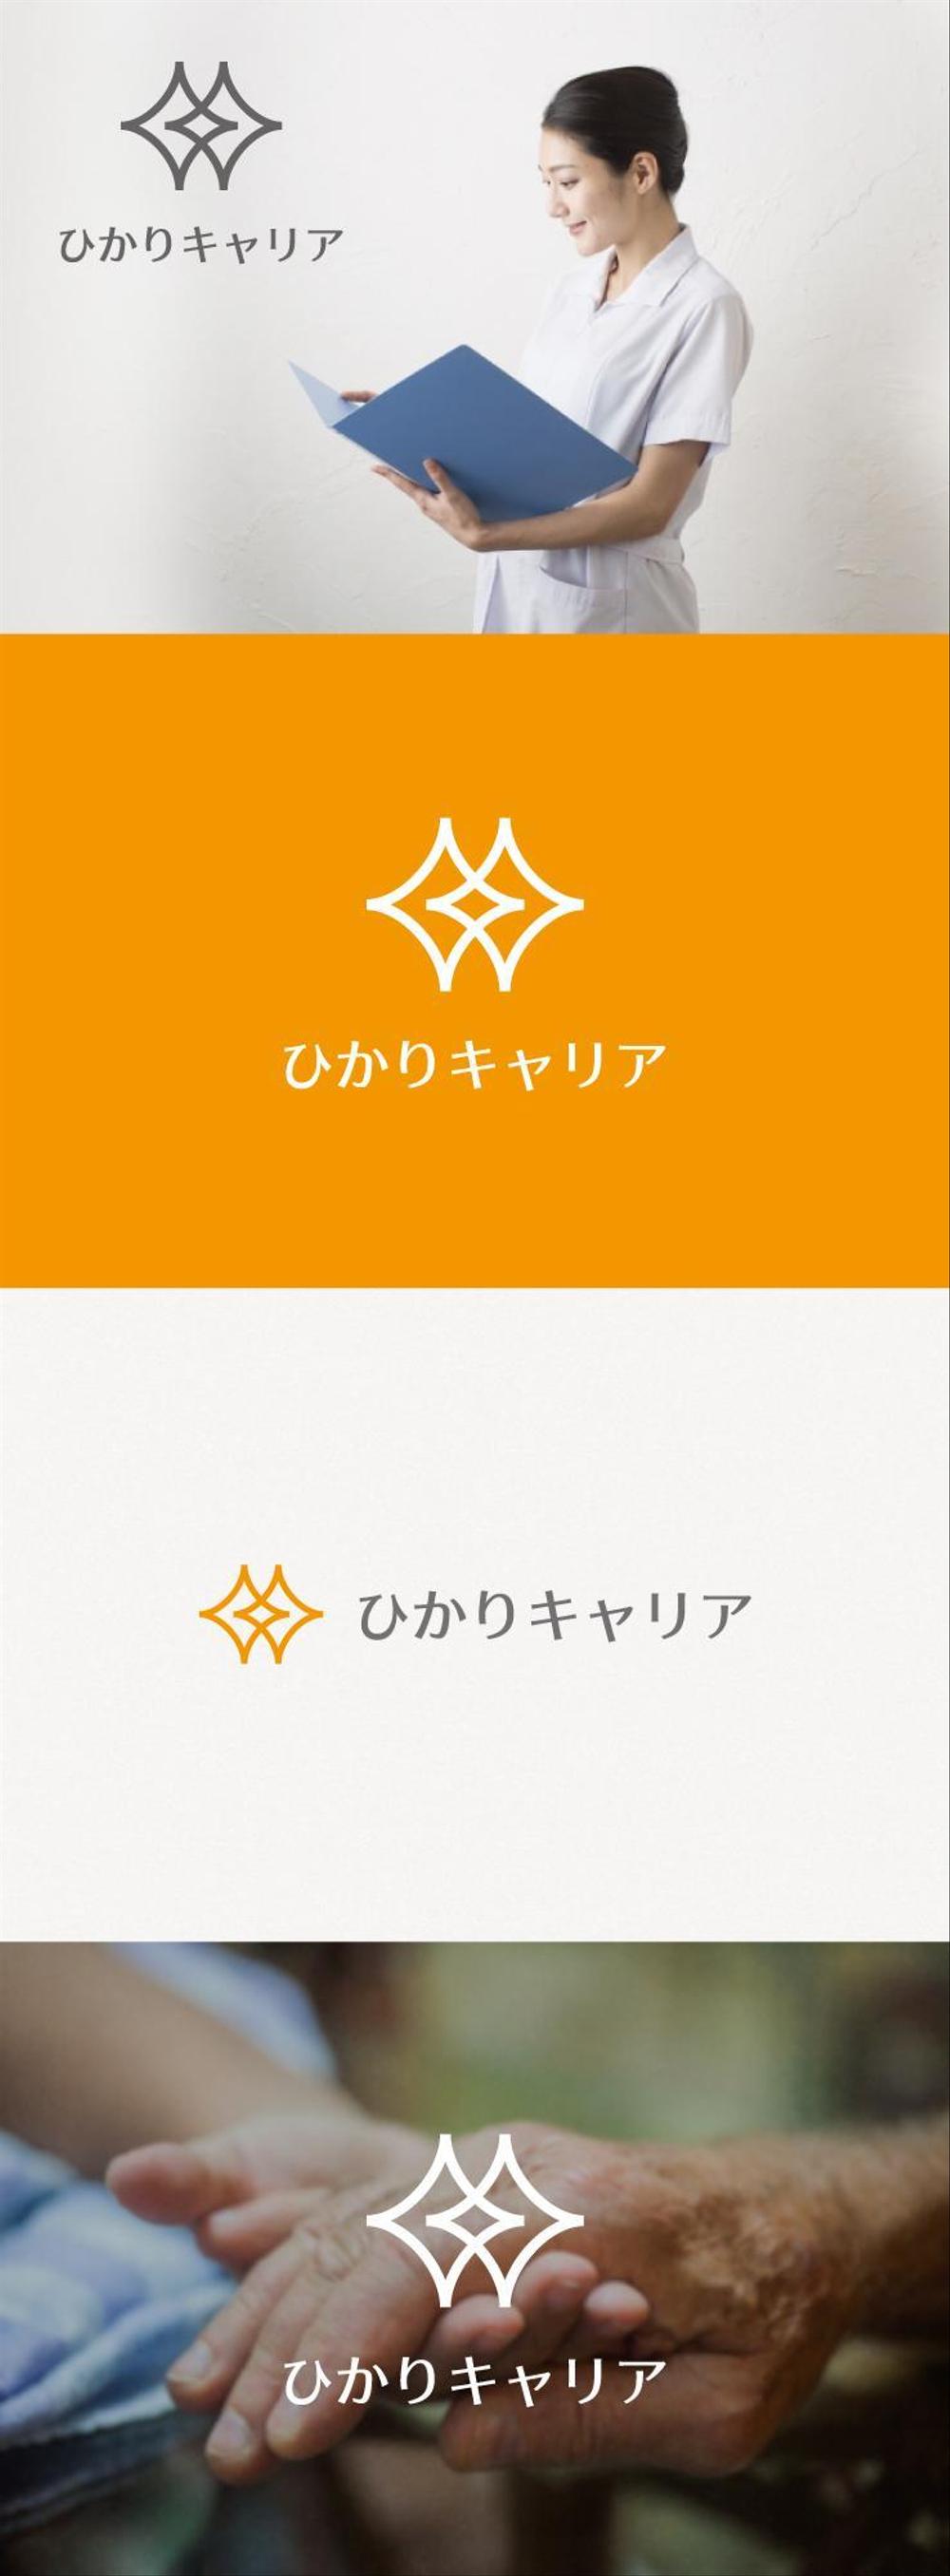 【新規立ち上げ】人材紹介会社のロゴ制作